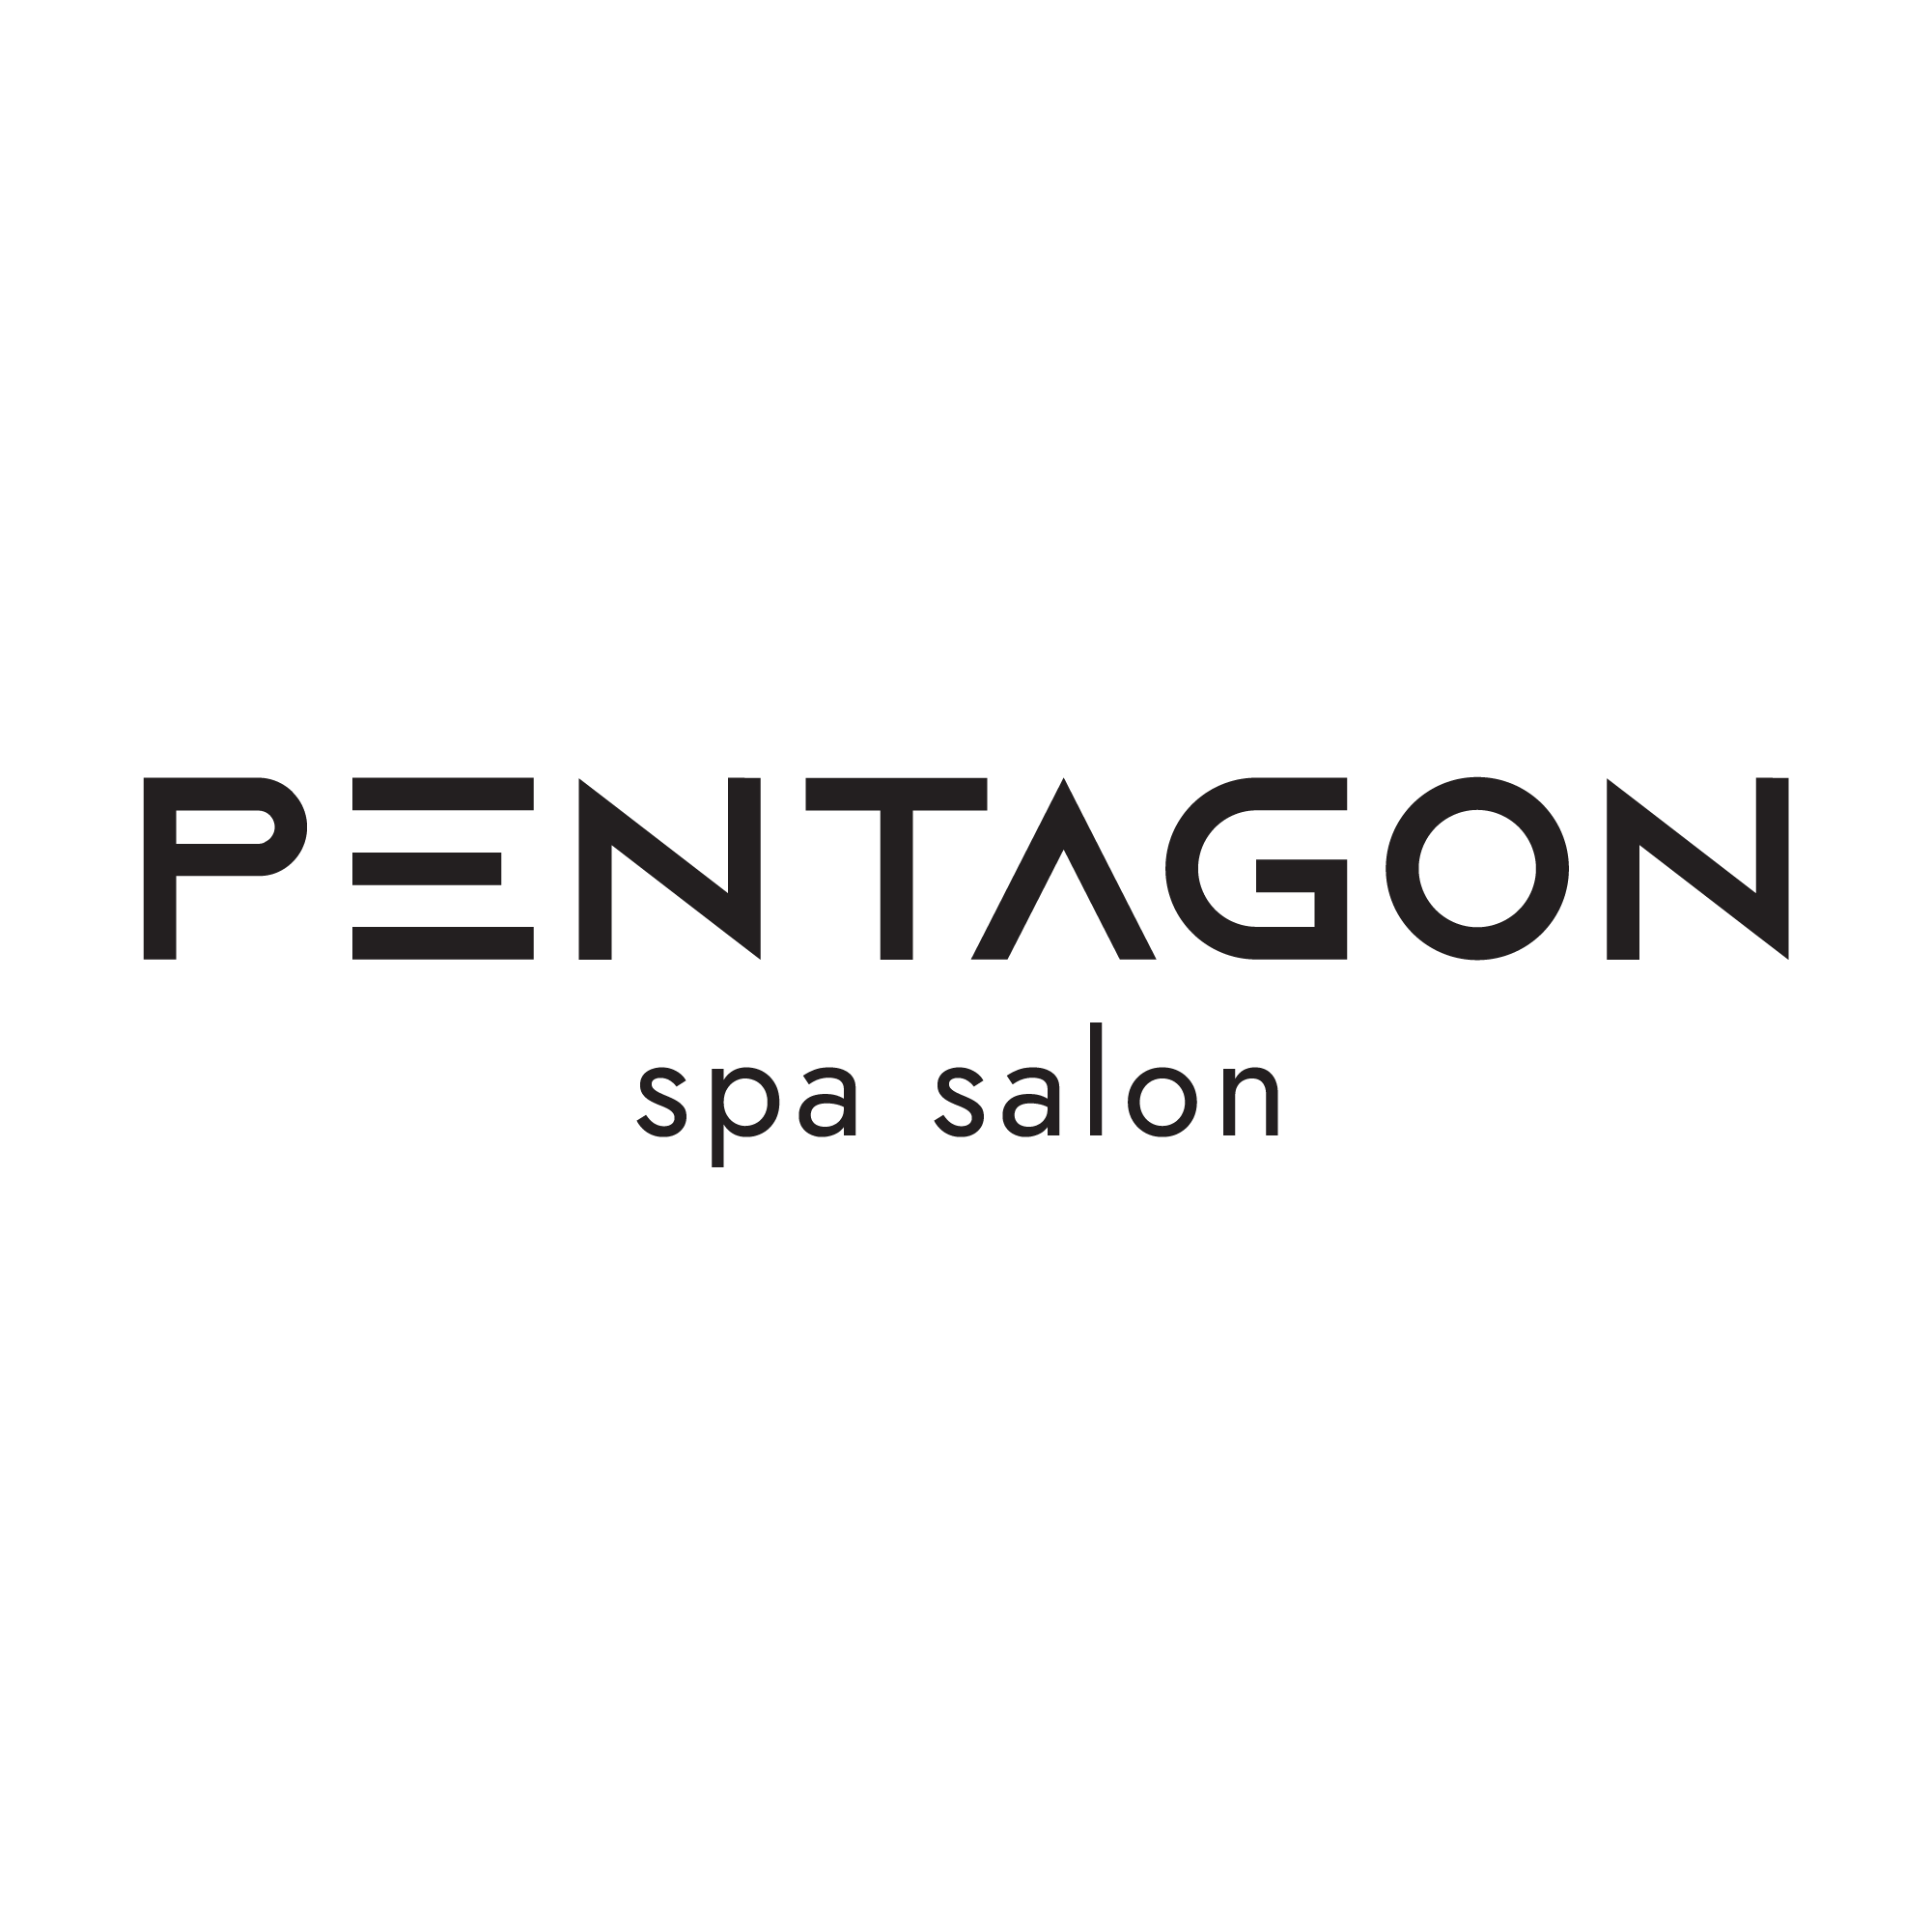 Логотип компании Pentagon